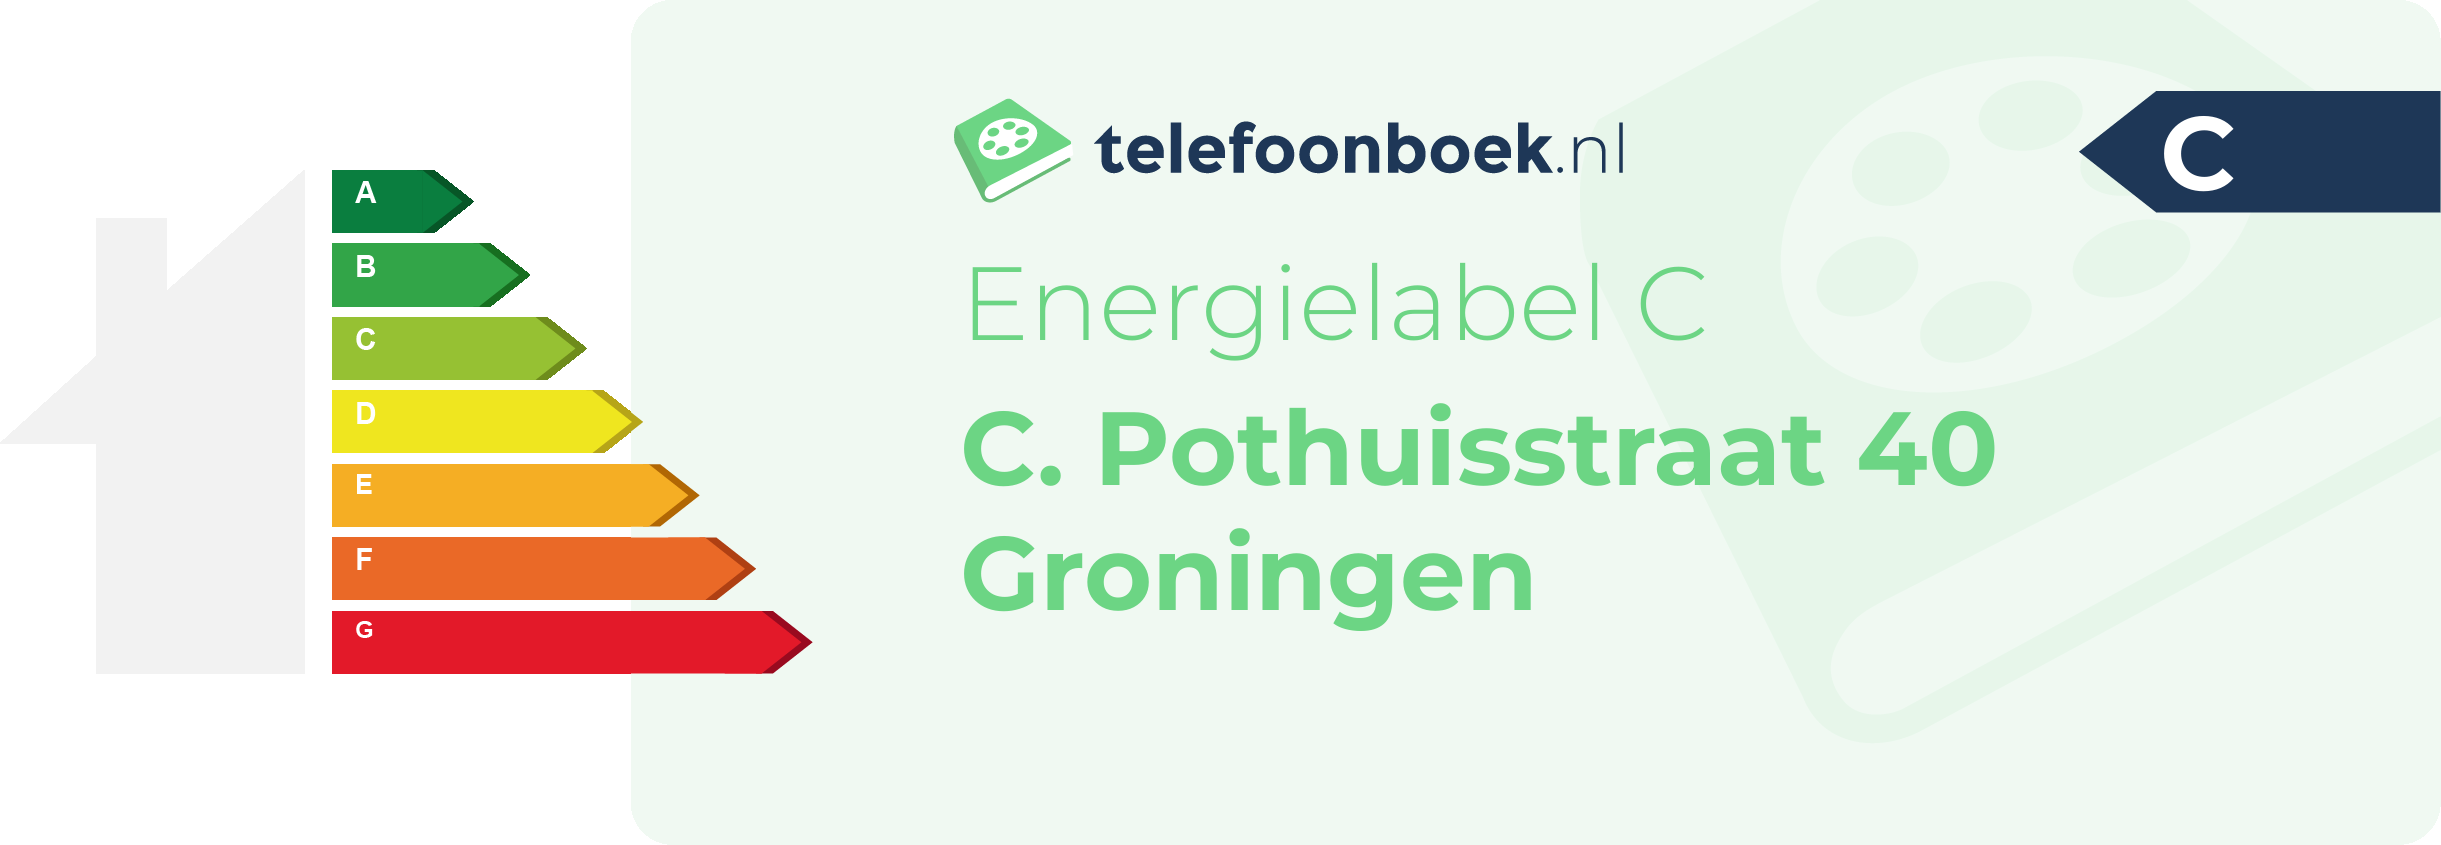 Energielabel C. Pothuisstraat 40 Groningen